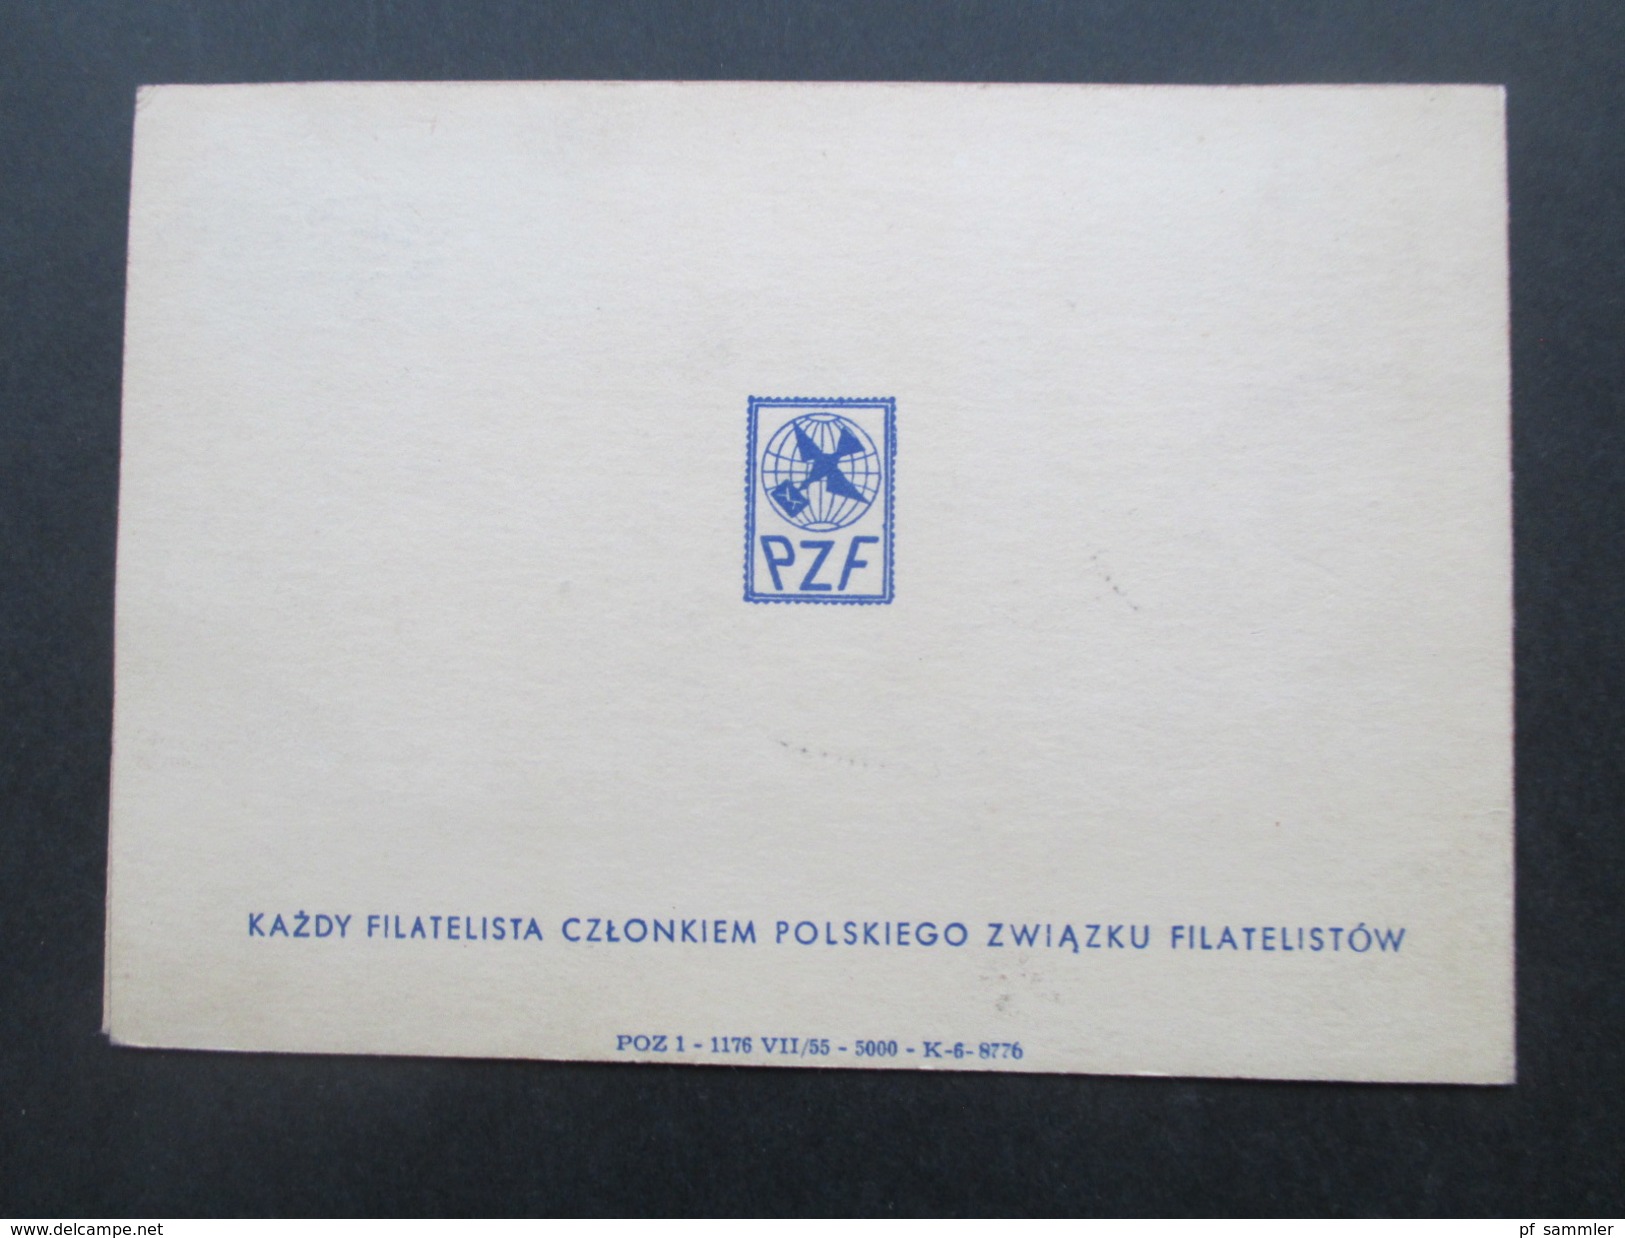 Polen 1955 Klappkarte Block 15 / 16 Sonderkarte VI. Ogolnopolska Wystawa Filatelistyczna. BM Ausstellung Posen